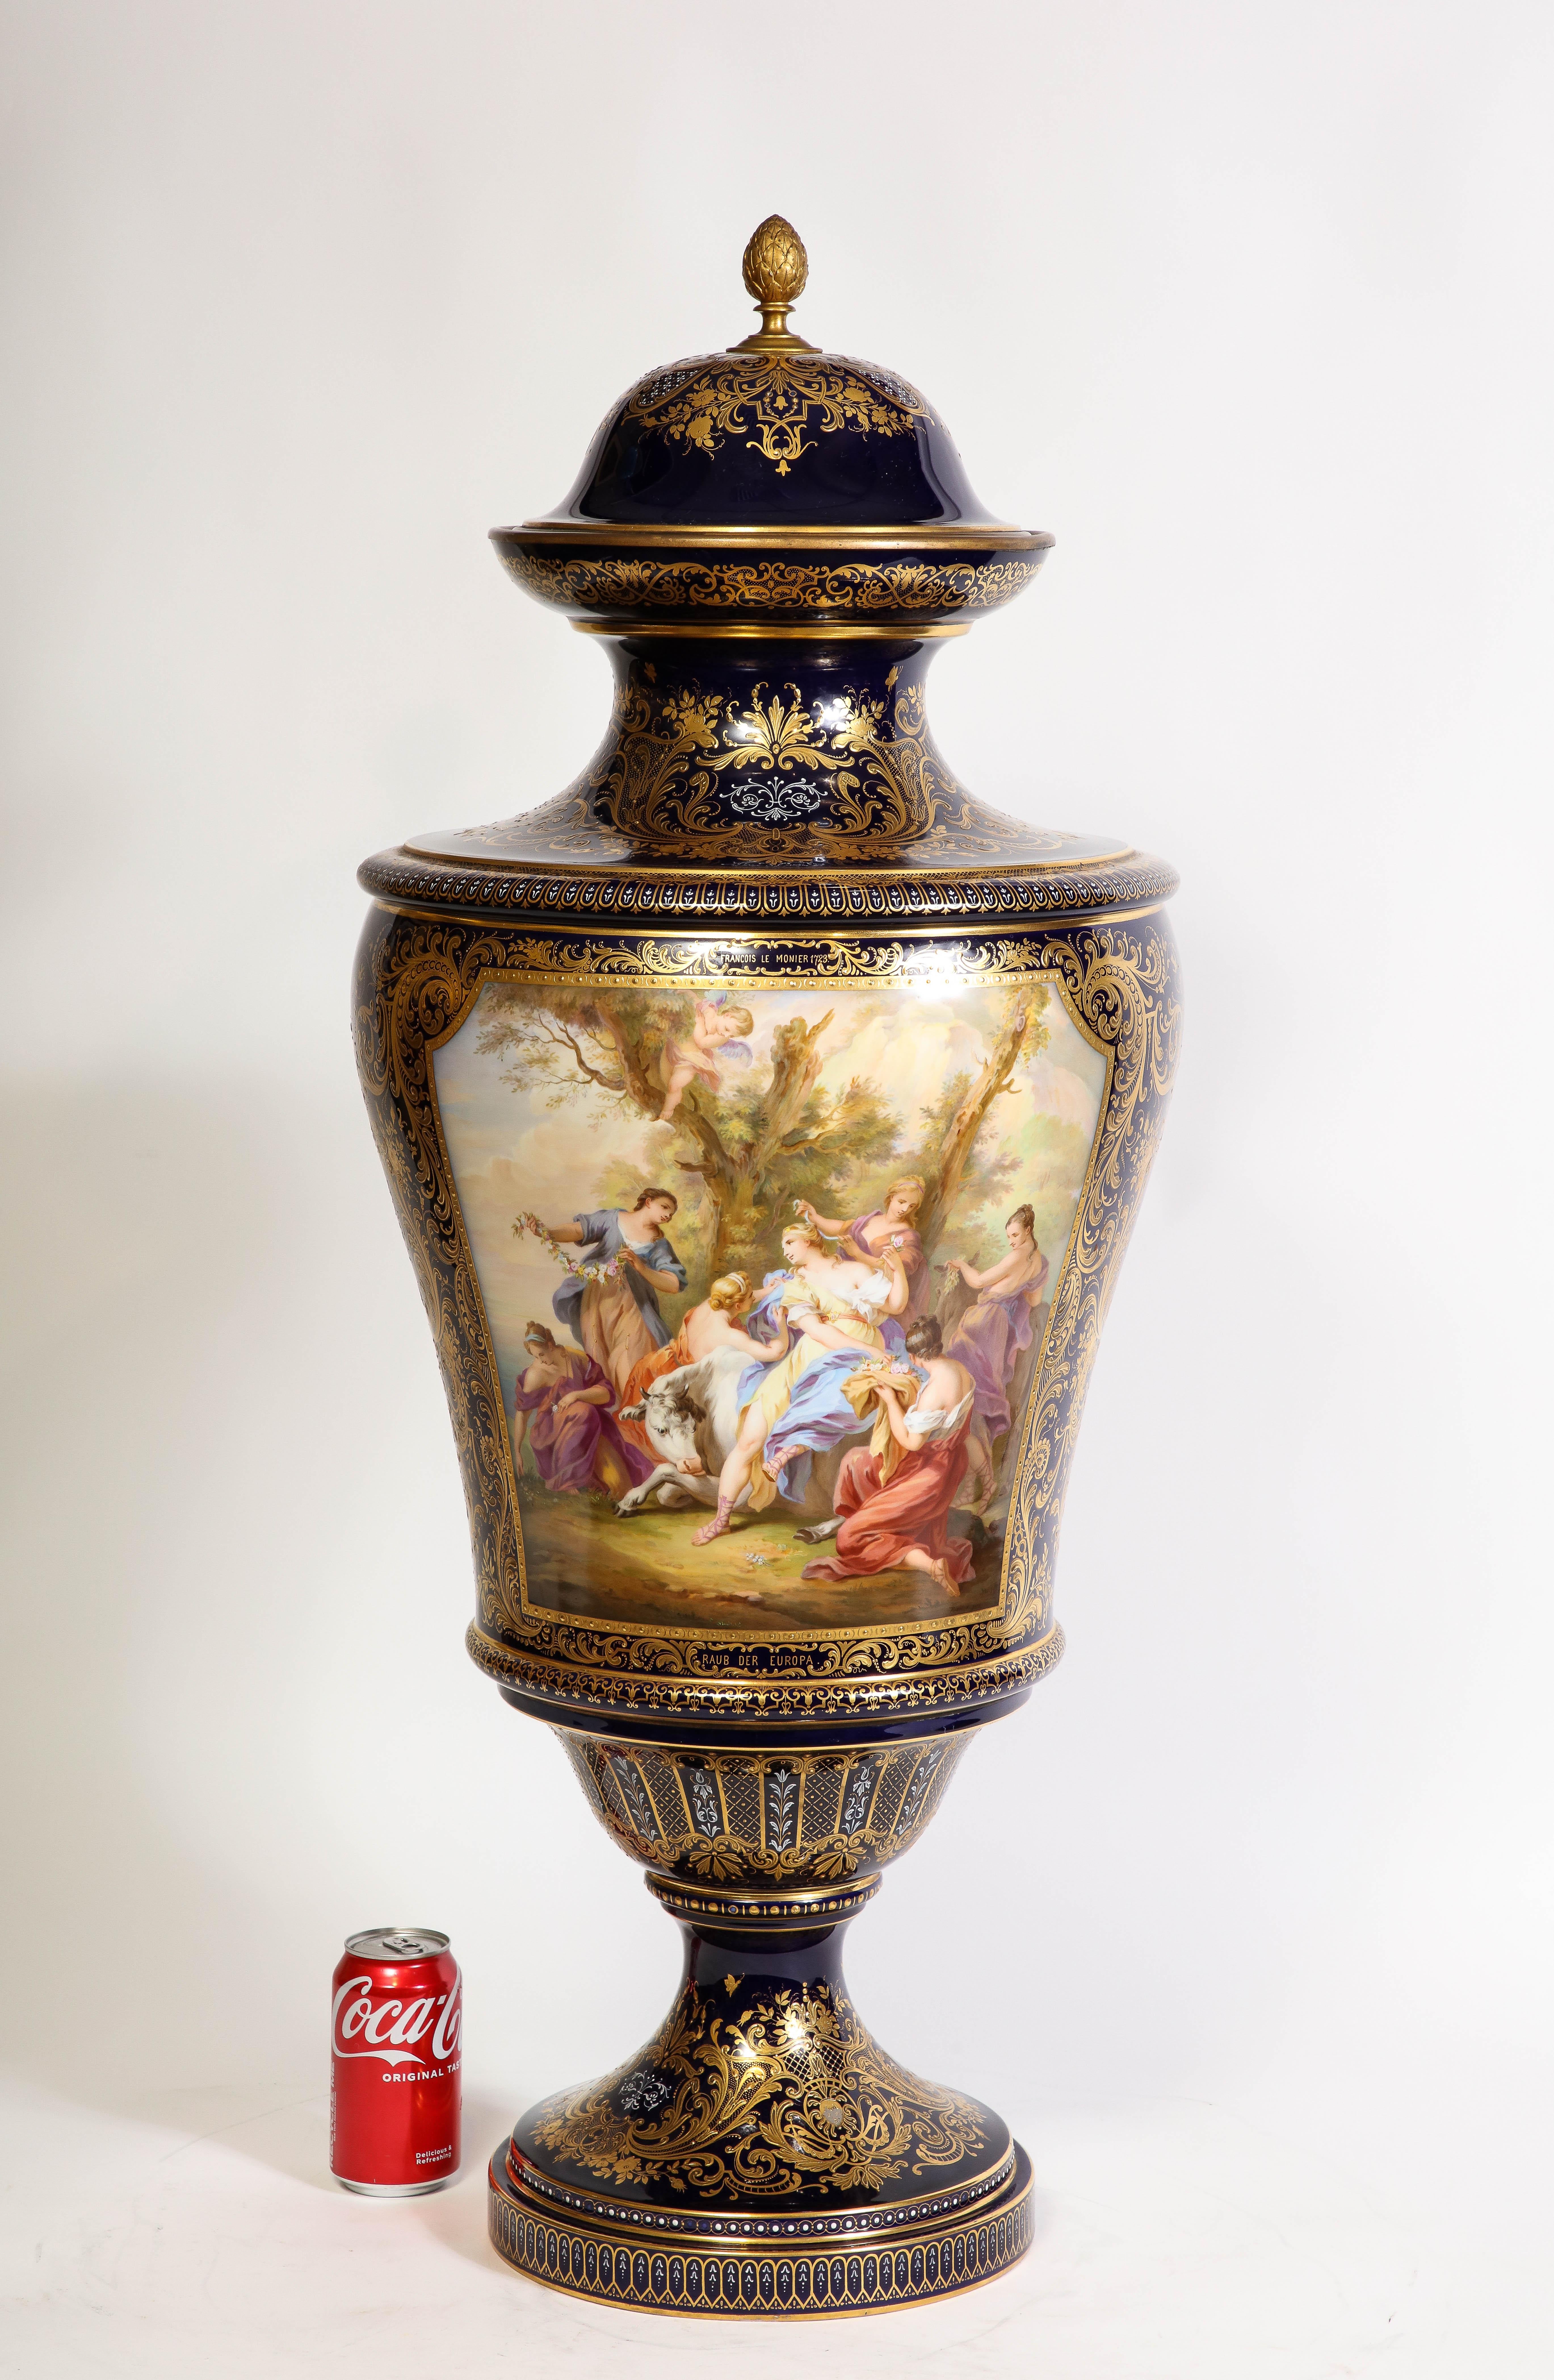 Couvert monumental en porcelaine royale de Vienne du XIXe siècle à fond bleu cobalt  Vase avec scènes de Watteau.  Émerveillez-vous devant la magnificence de ce très grand vase couvert monumental en porcelaine de Vienne royale à fond bleu, un